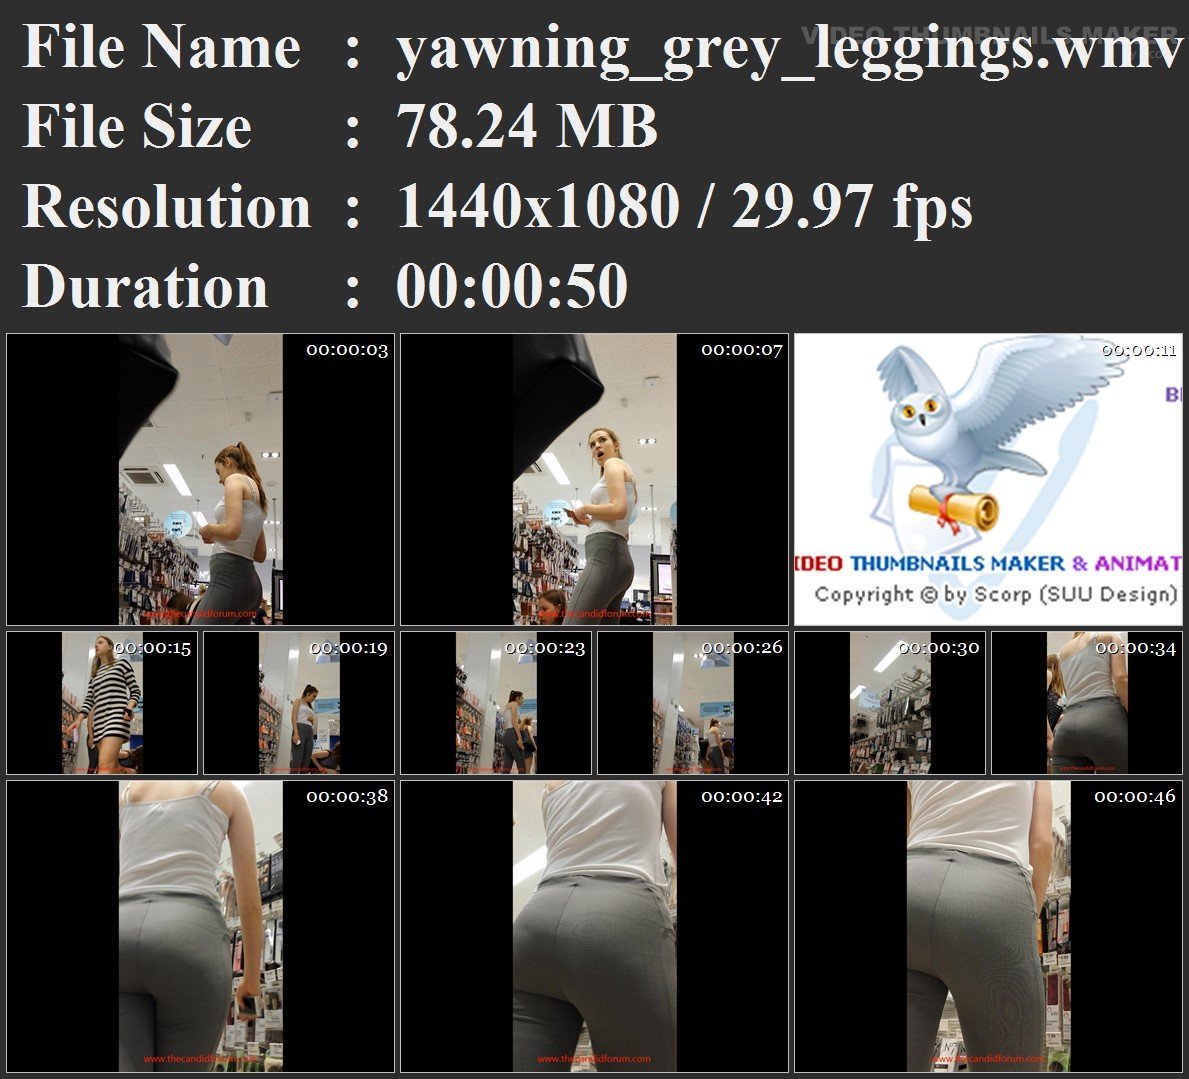 yawning_grey_leggings.wmv.jpg